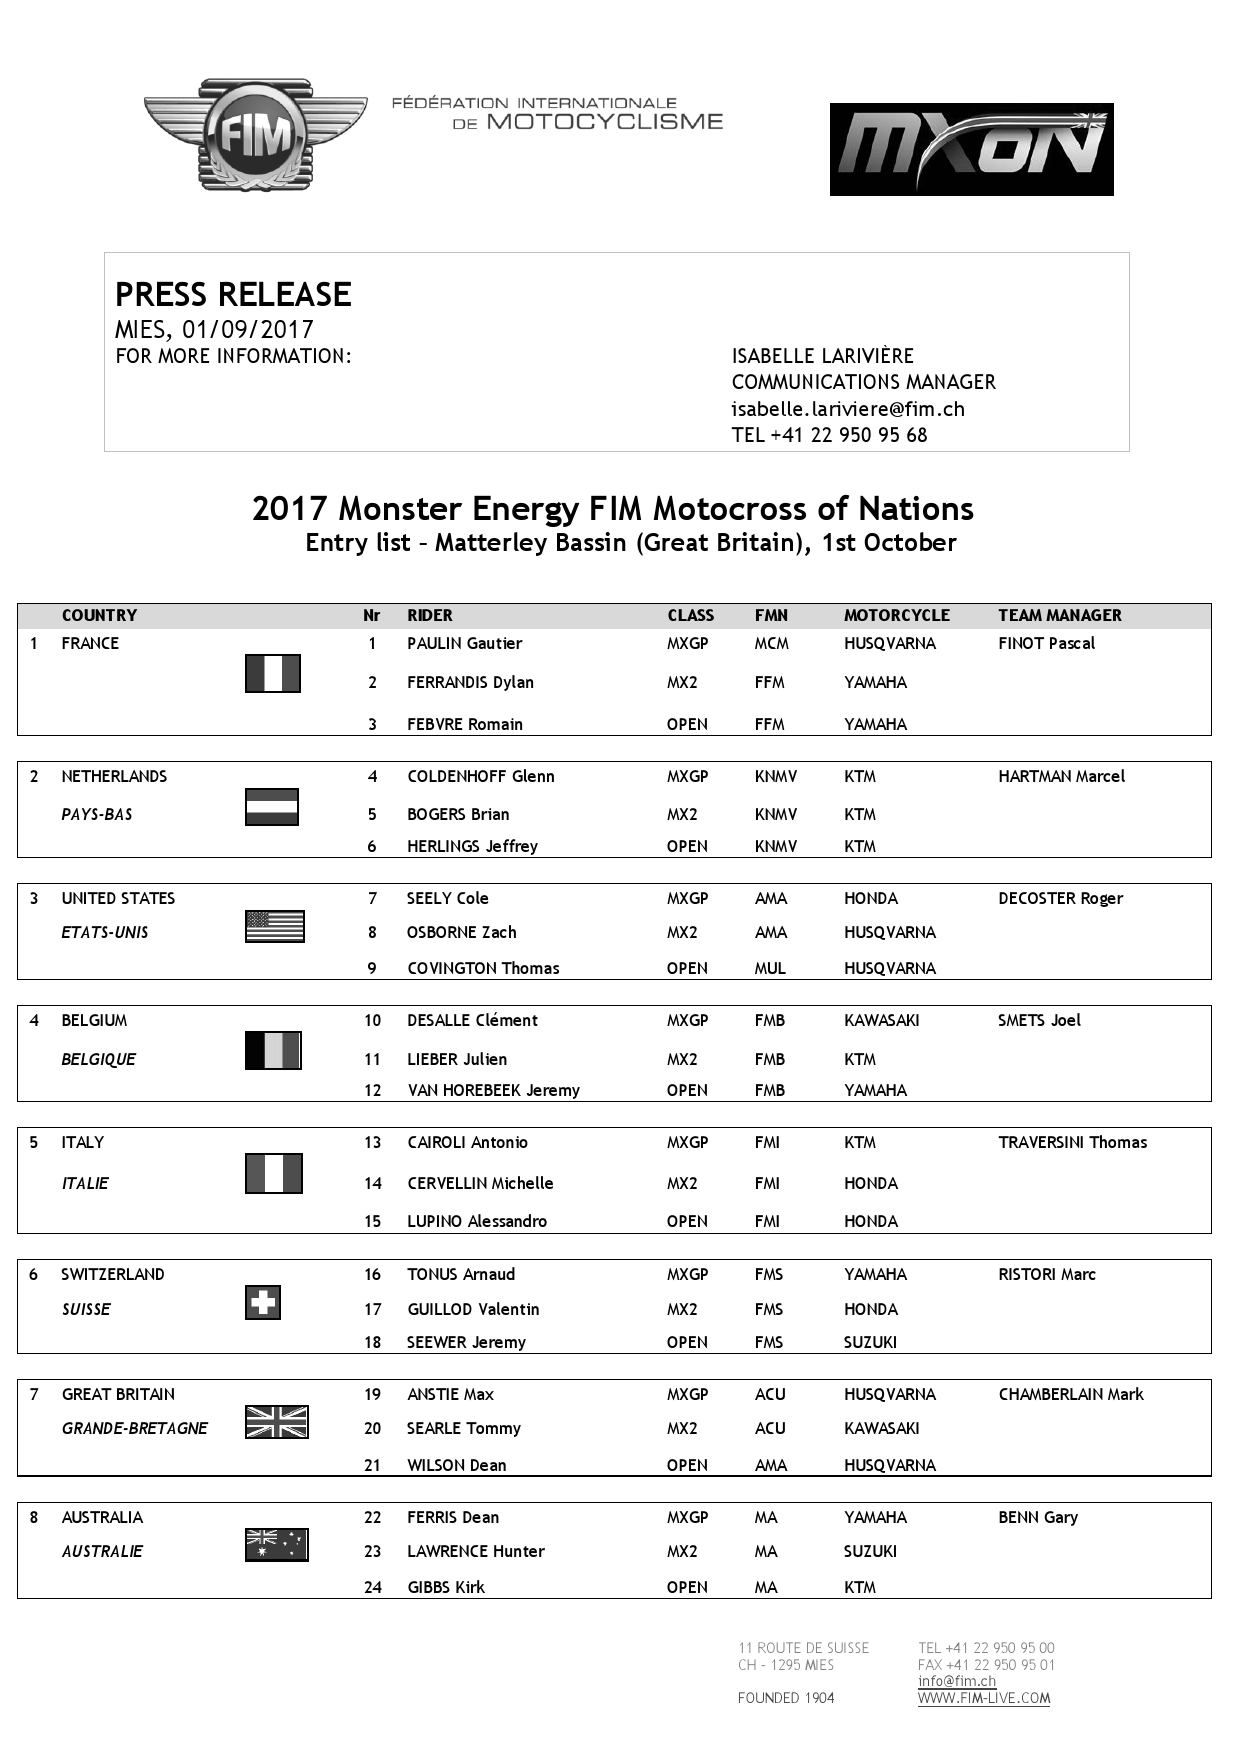 Список участников Мотокросса Наций 2017